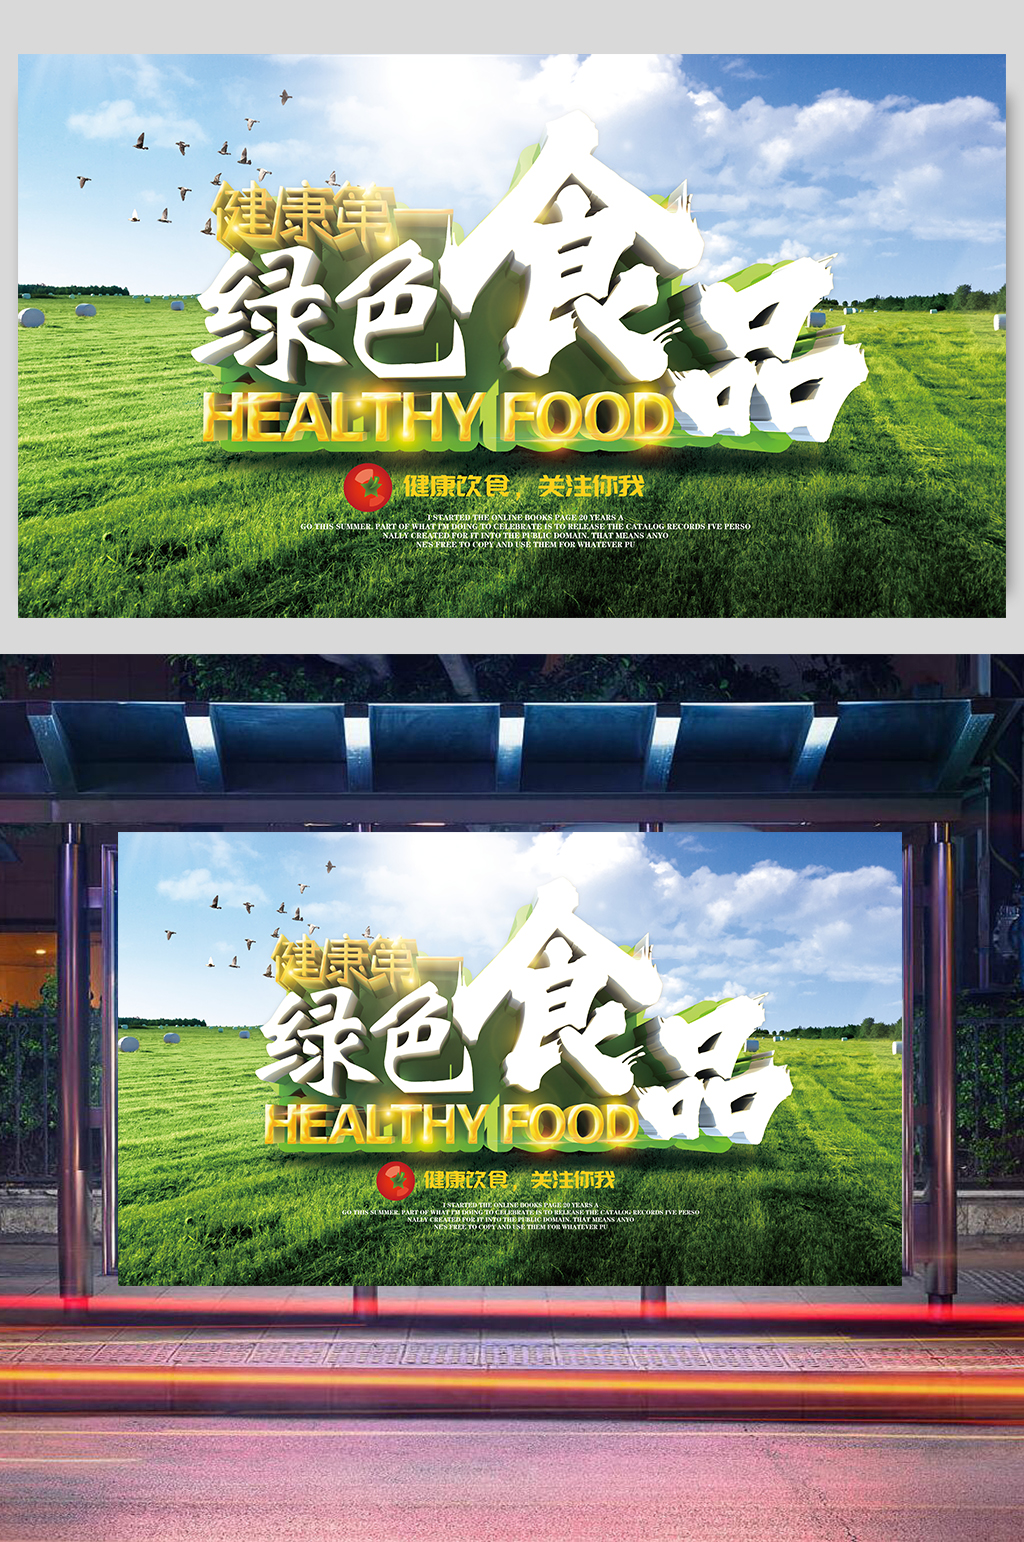 一绿色食品海报素材免费下载,本作品是由李少年上传的原创平面广告